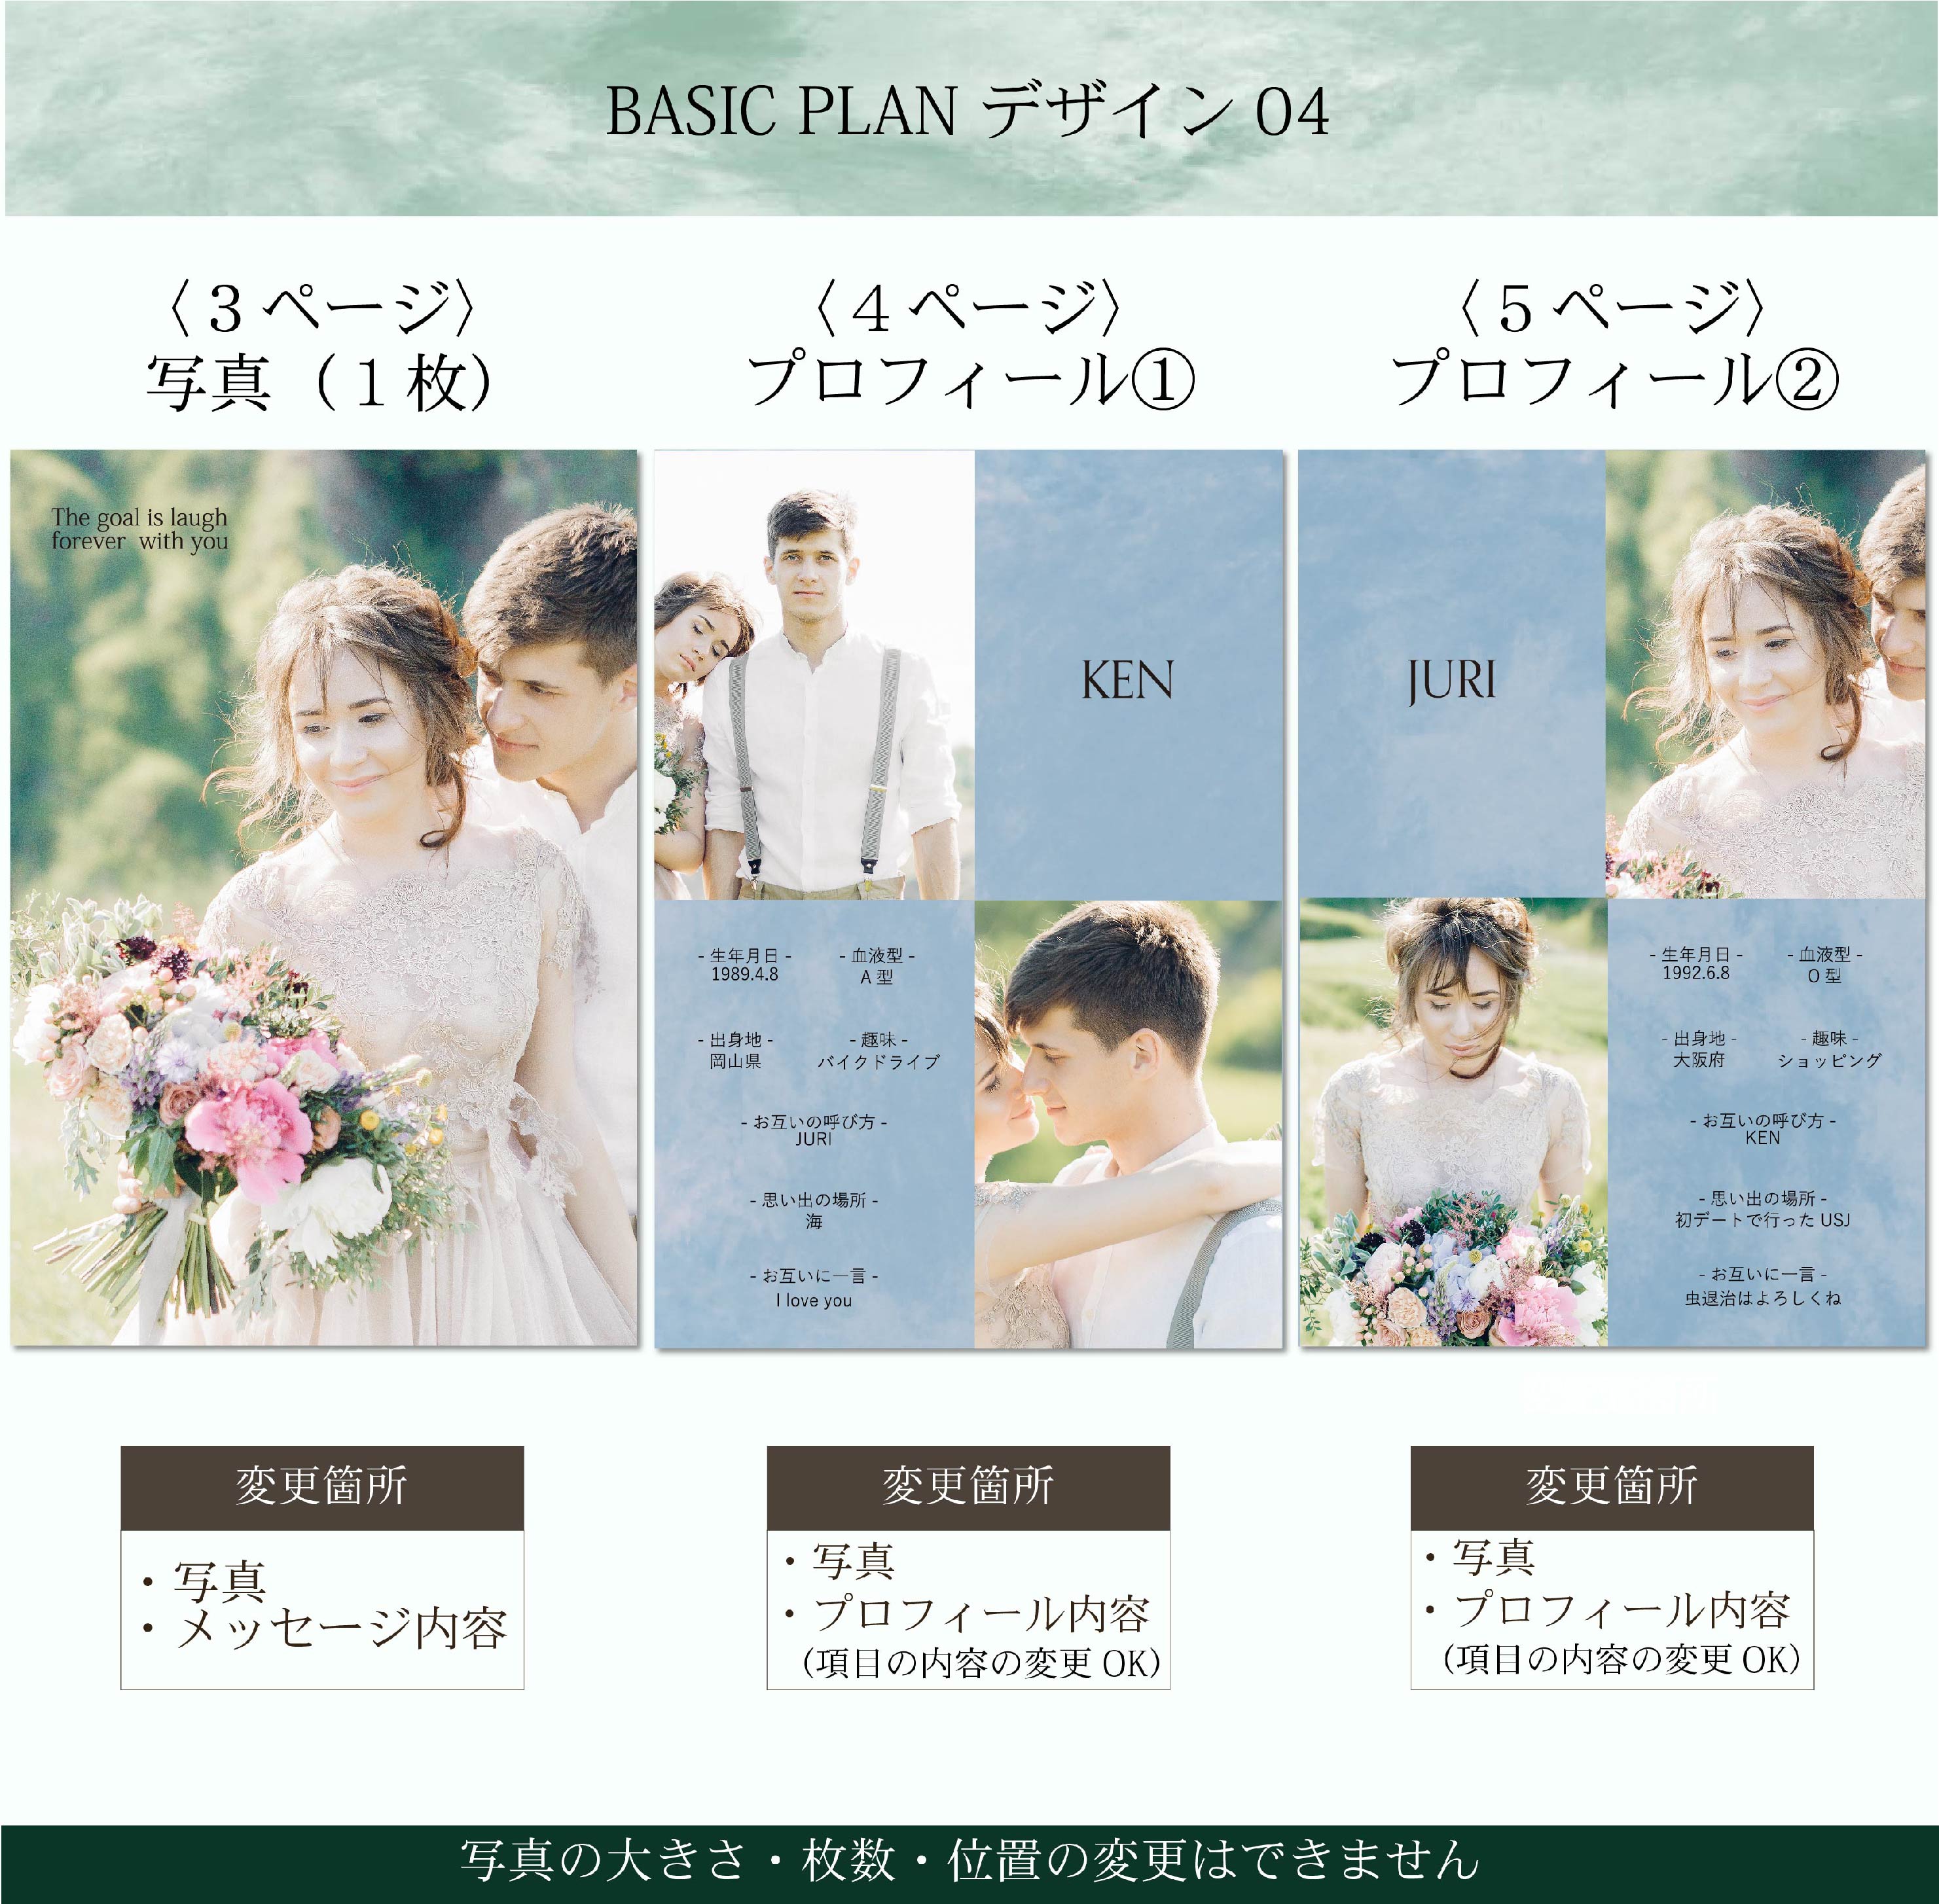 【プロフィールブック】BASIC PLAN - 04